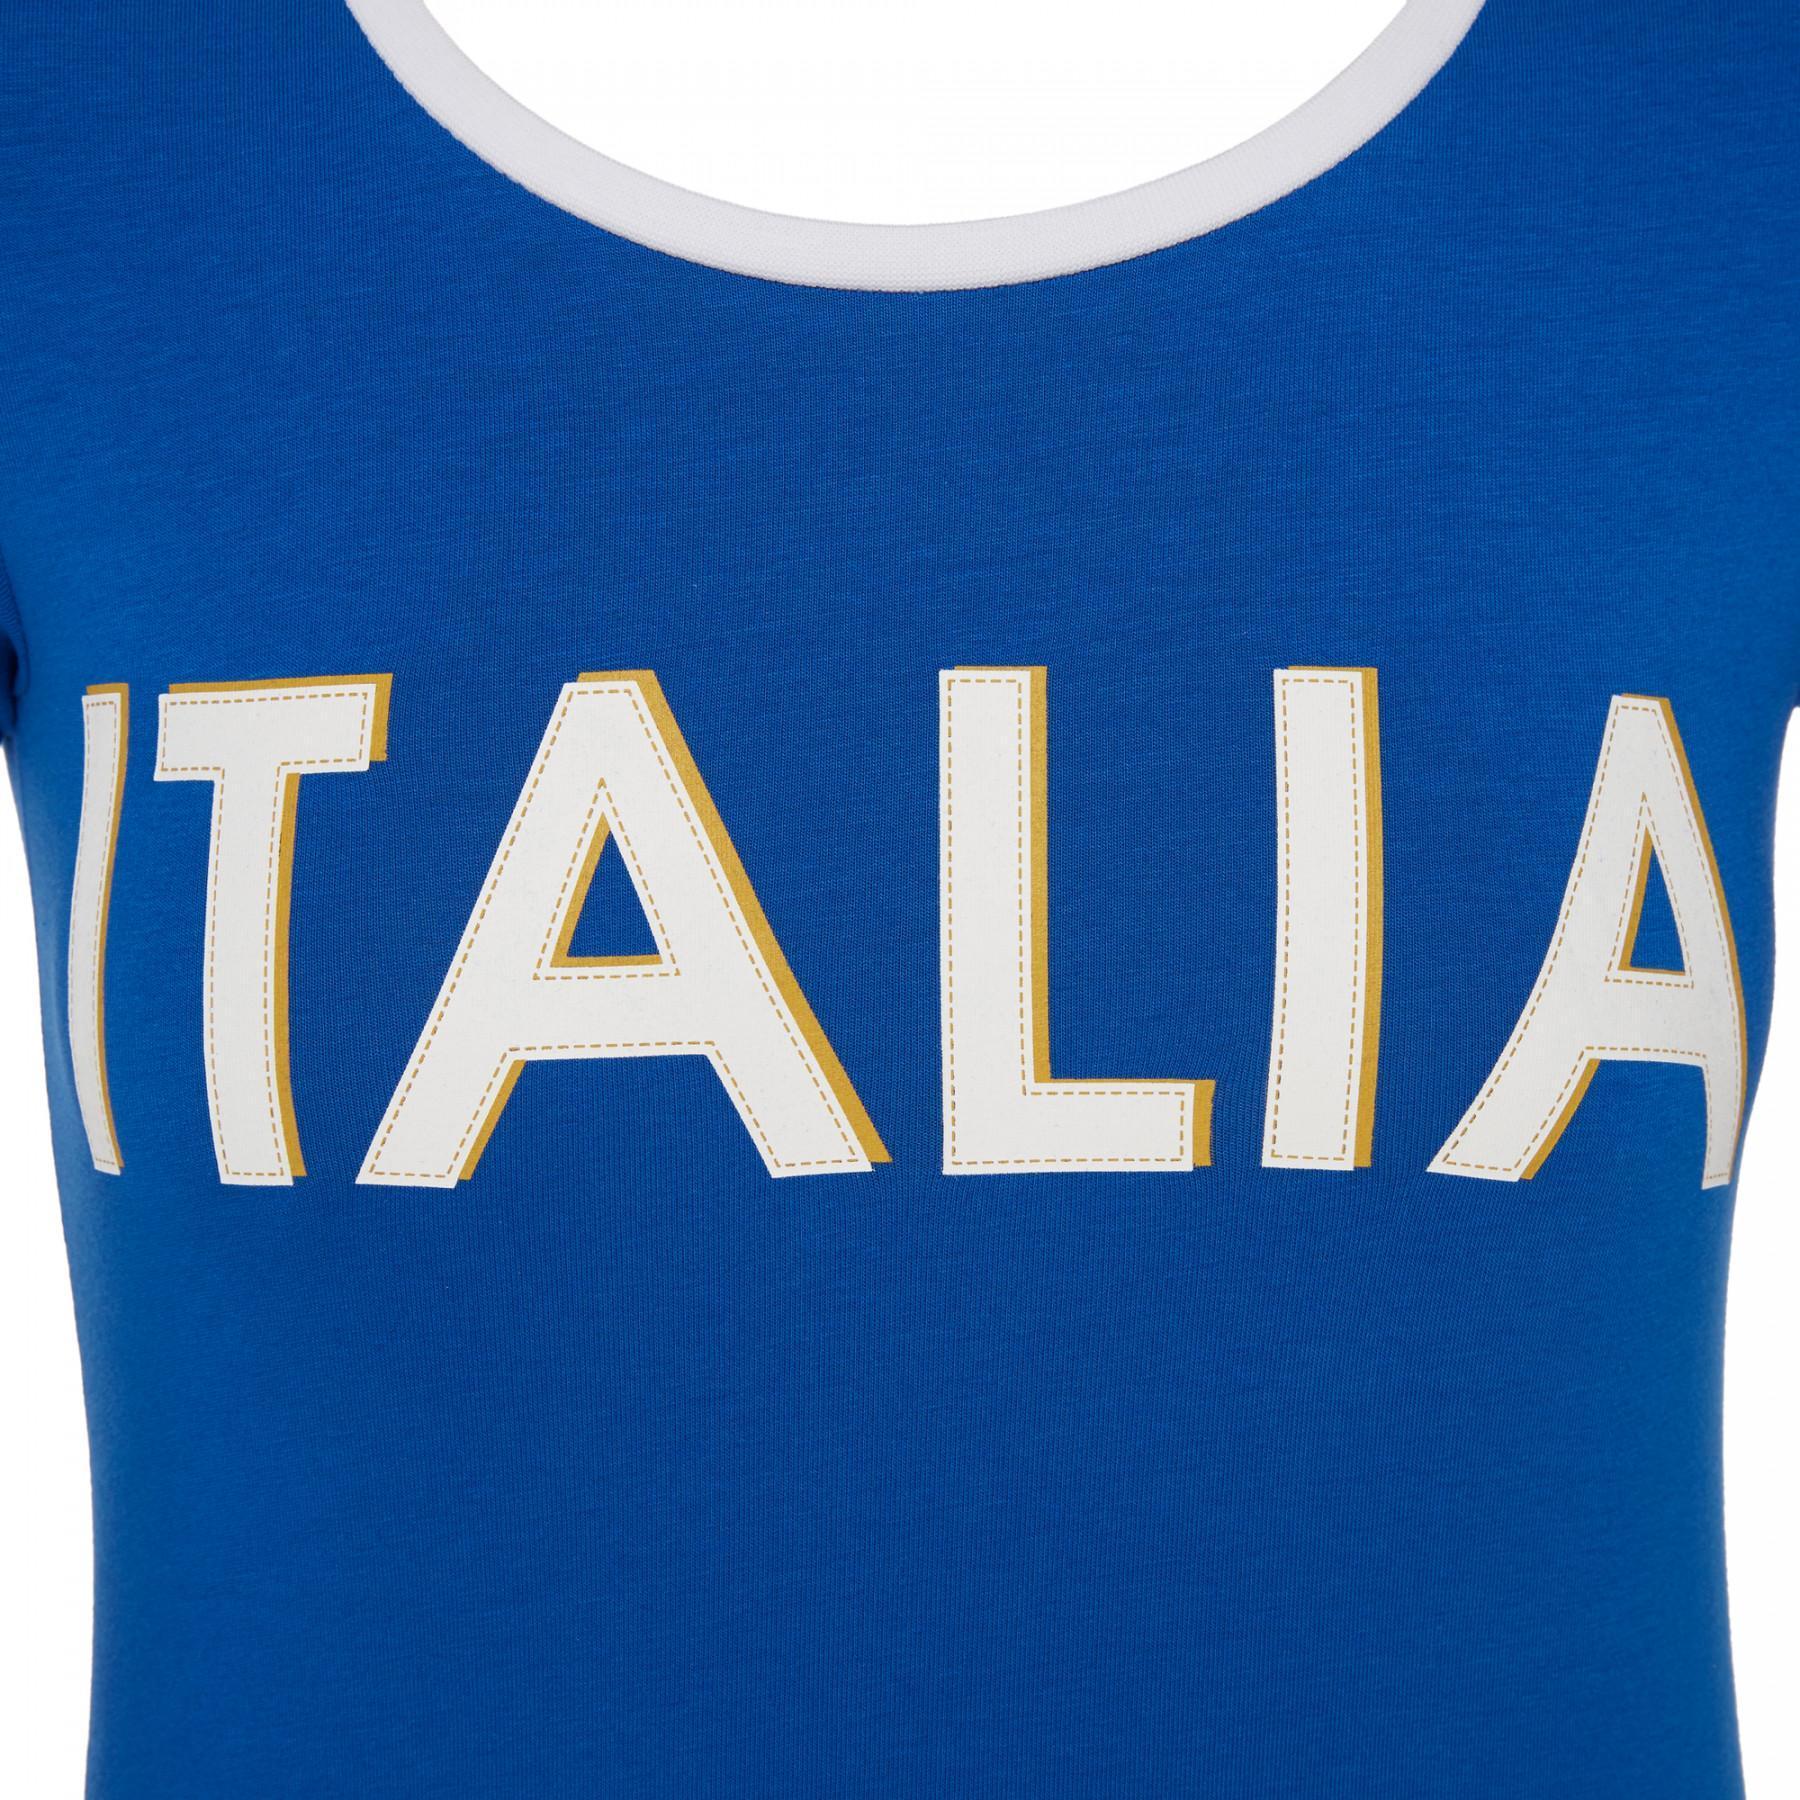 Camiseta abanico mujer Italie Rugby 2017-2018